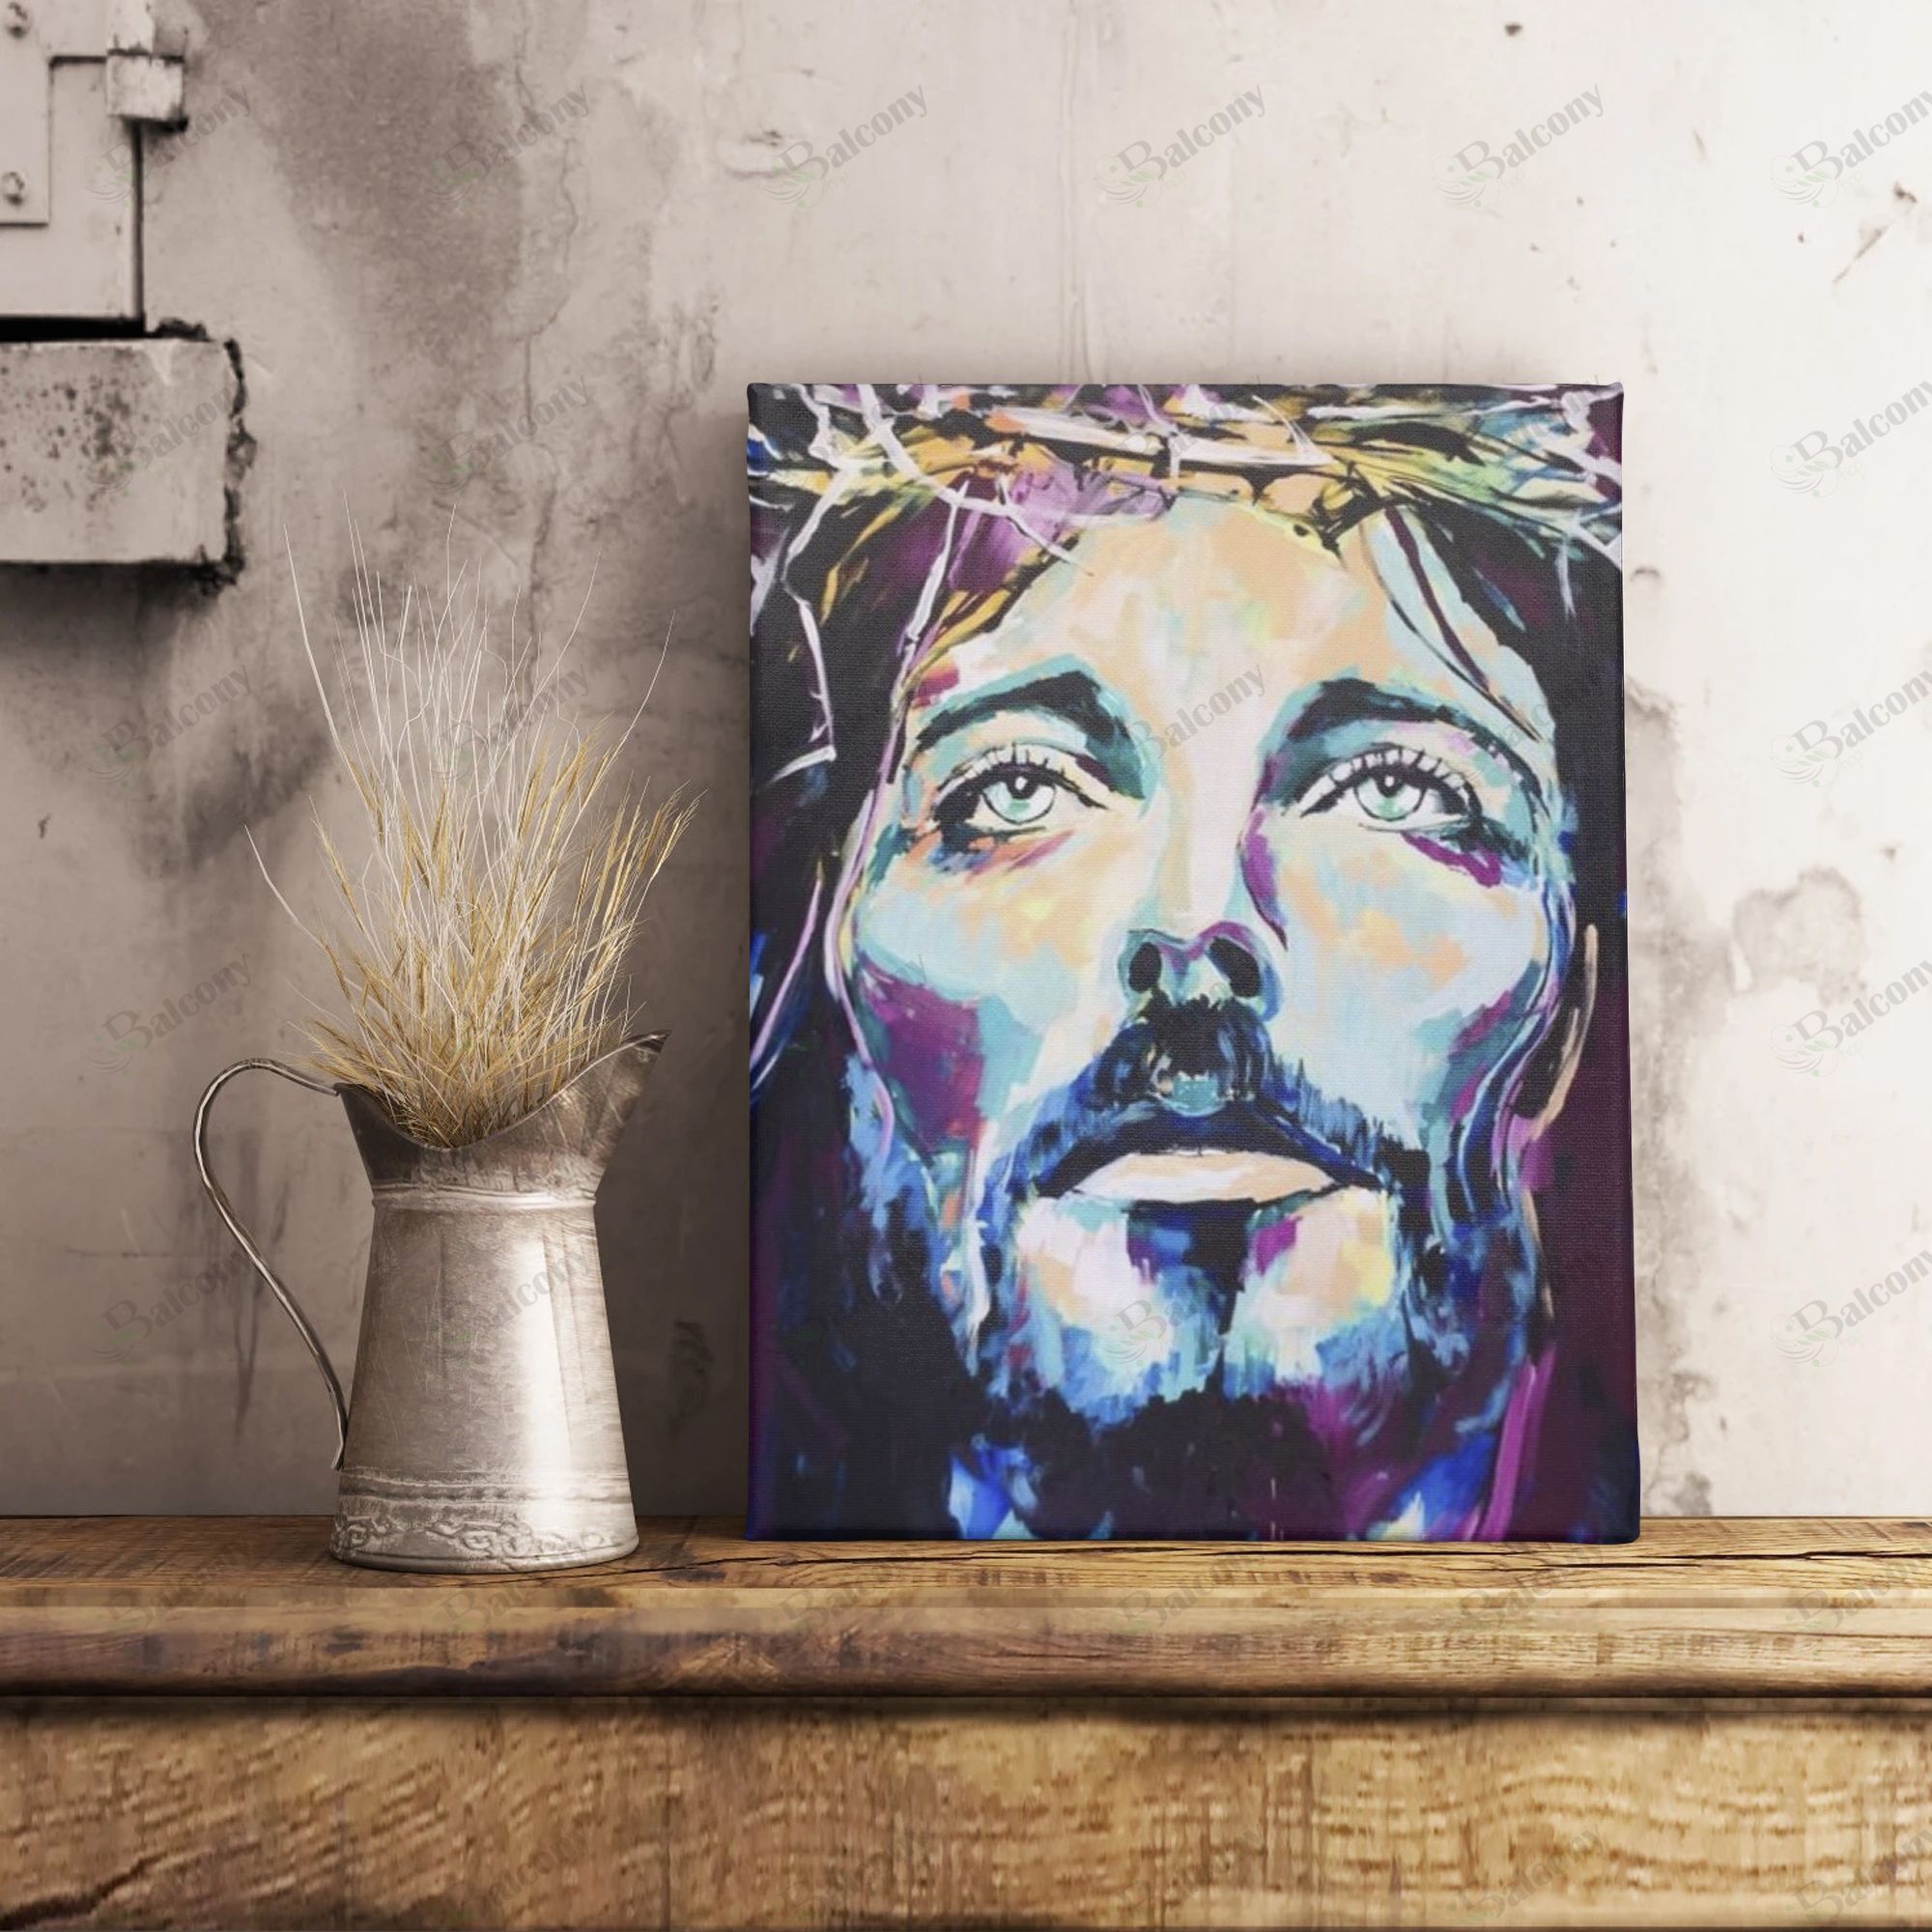 Jesus Poster 009 – DRGGR